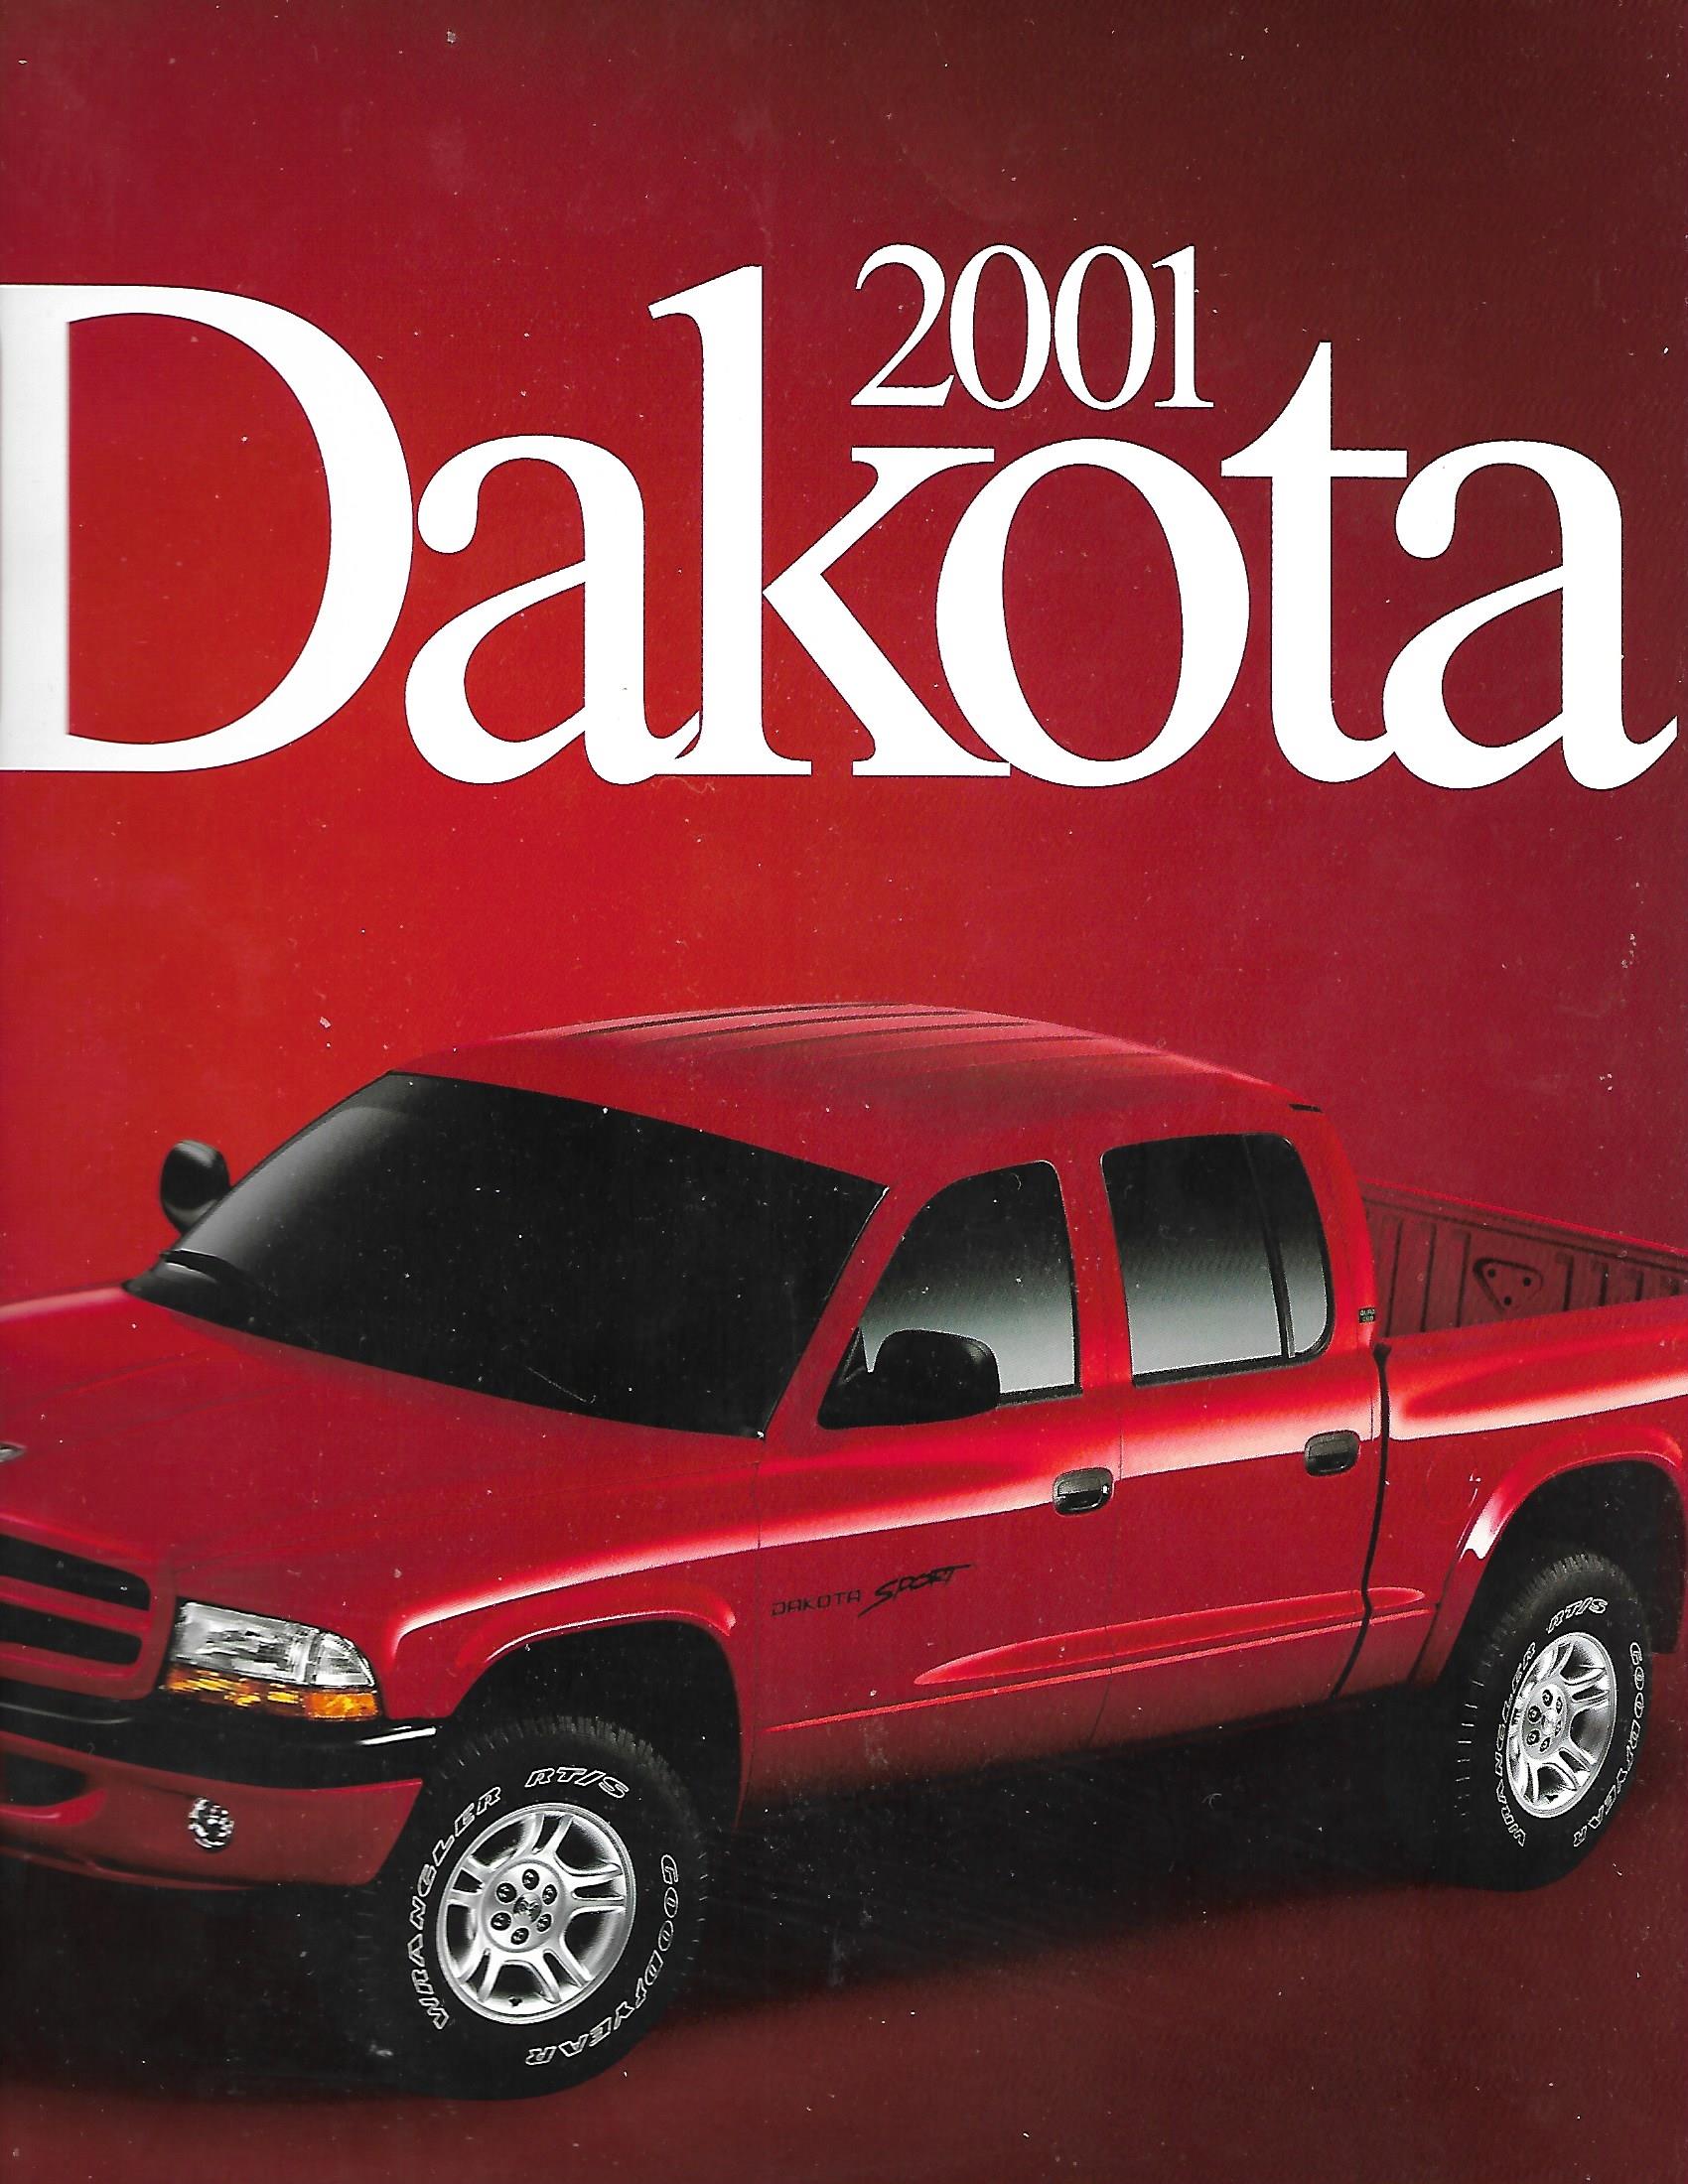 2001 Dodge Dakota-01